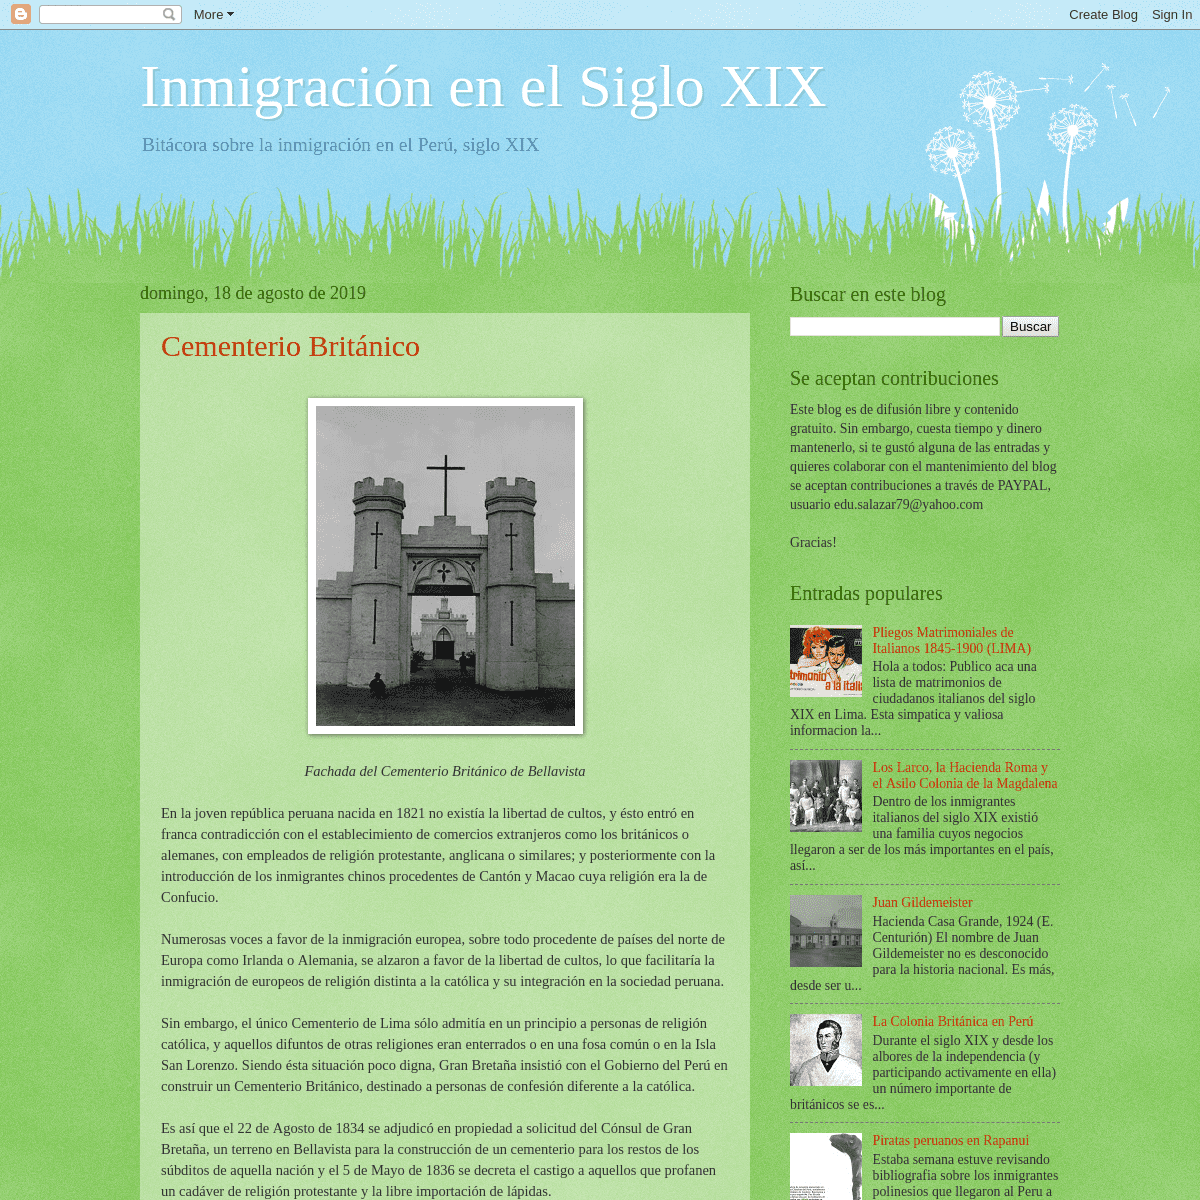 A complete backup of inmigracionsigloxix.blogspot.com